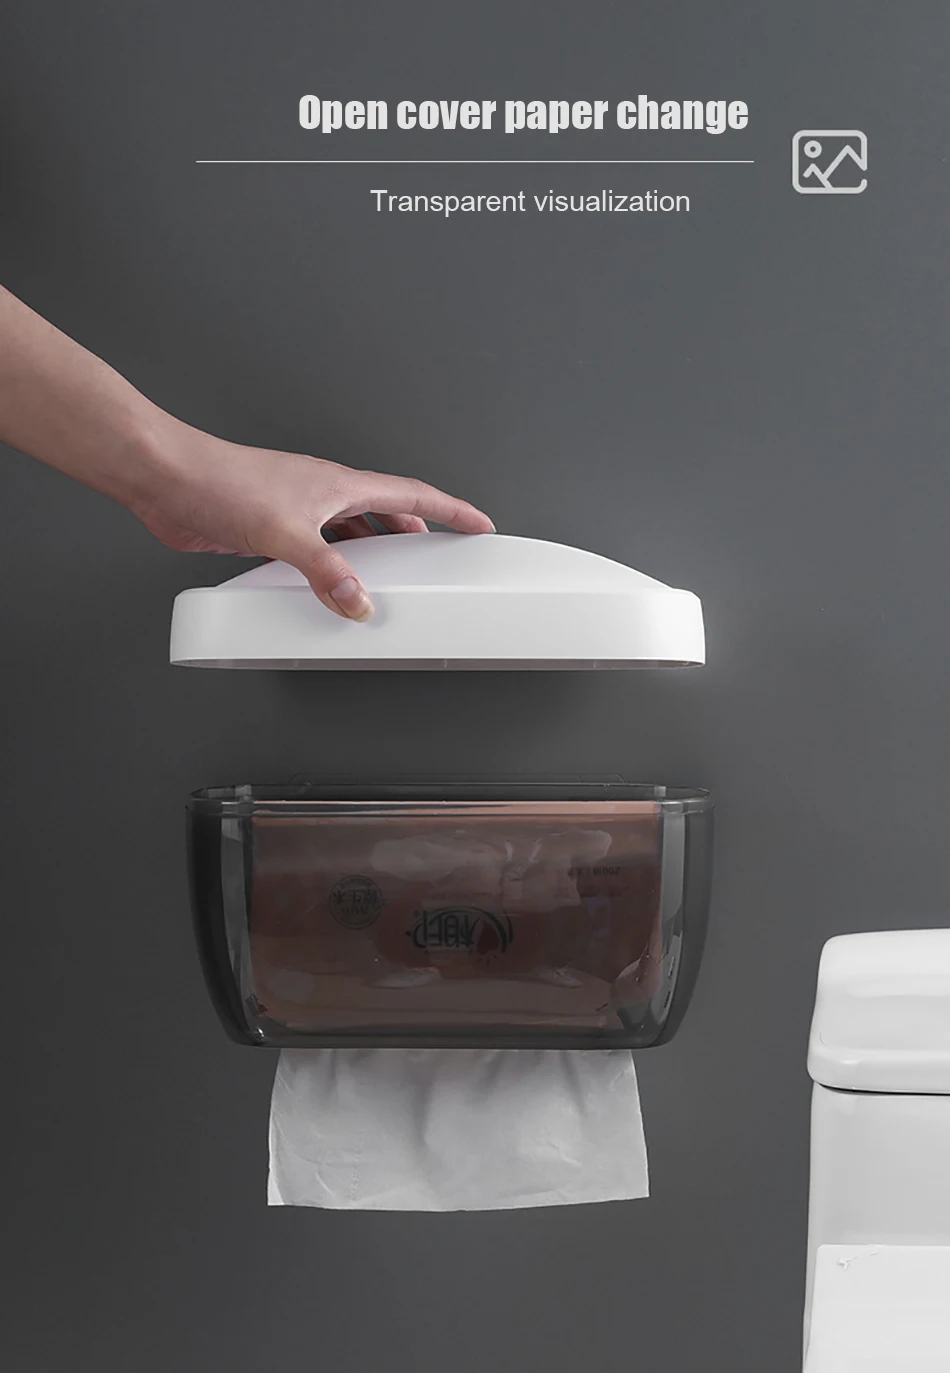 BAISPO держатель туалетной бумаги настенный держатель для туалетной бумаги водонепроницаемый ящик для хранения портативный держатель бумаги для ванной комнаты